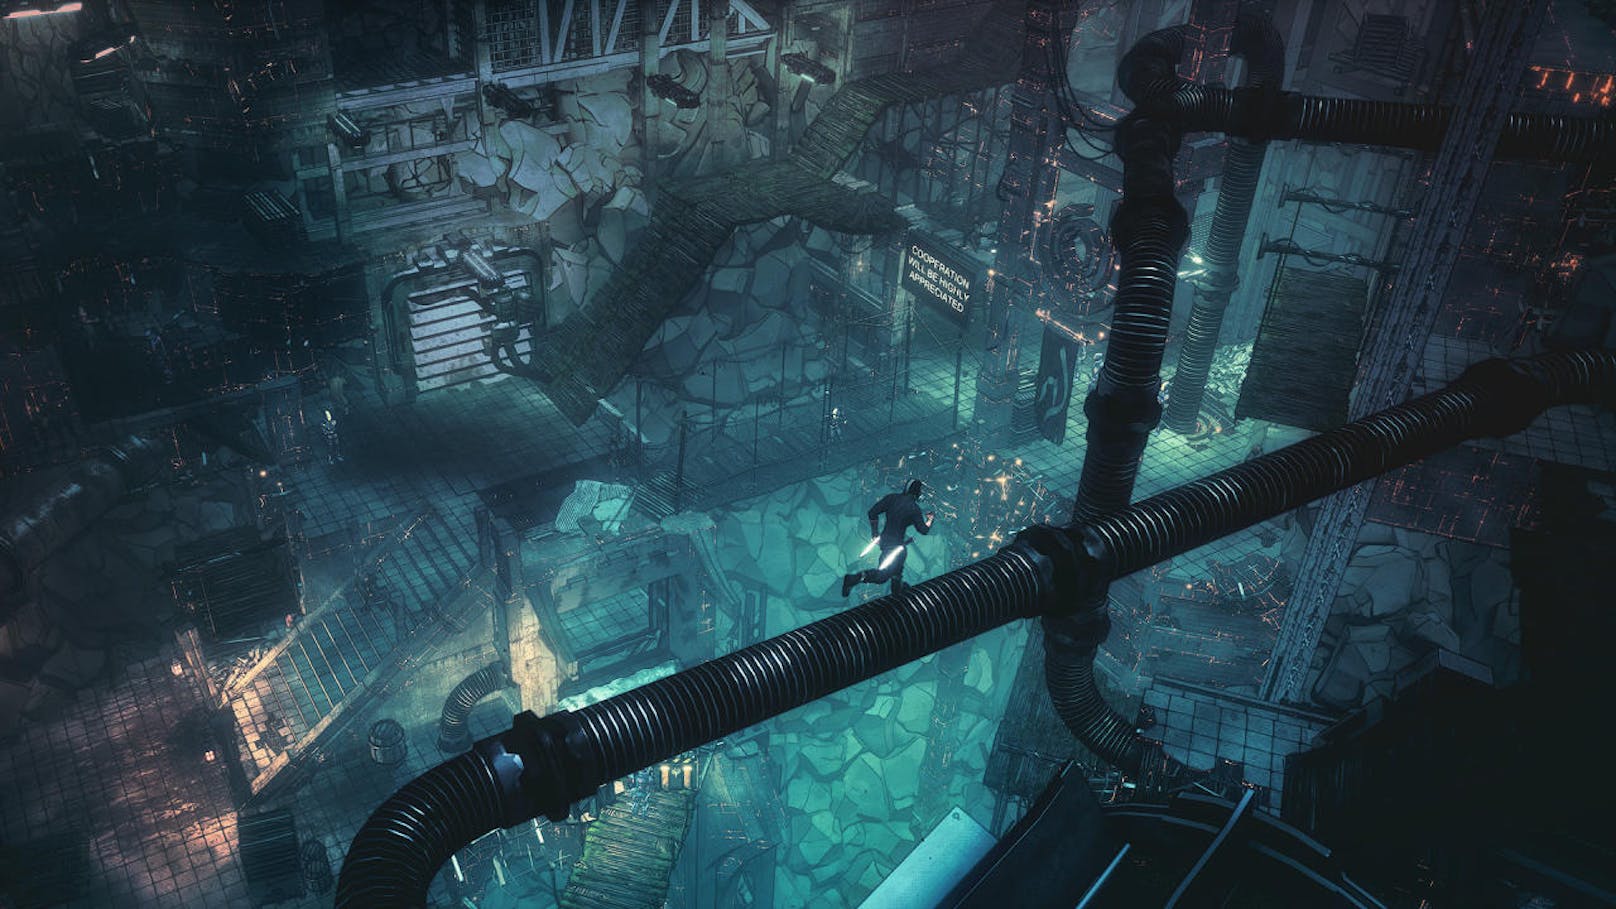 Das Game präsentiert sich von Inhalt, Atmosphäre und Umgebung äußerst düster, bietet aber gleichzeitig eine toll umgesetzte Cyberpunkwelt.